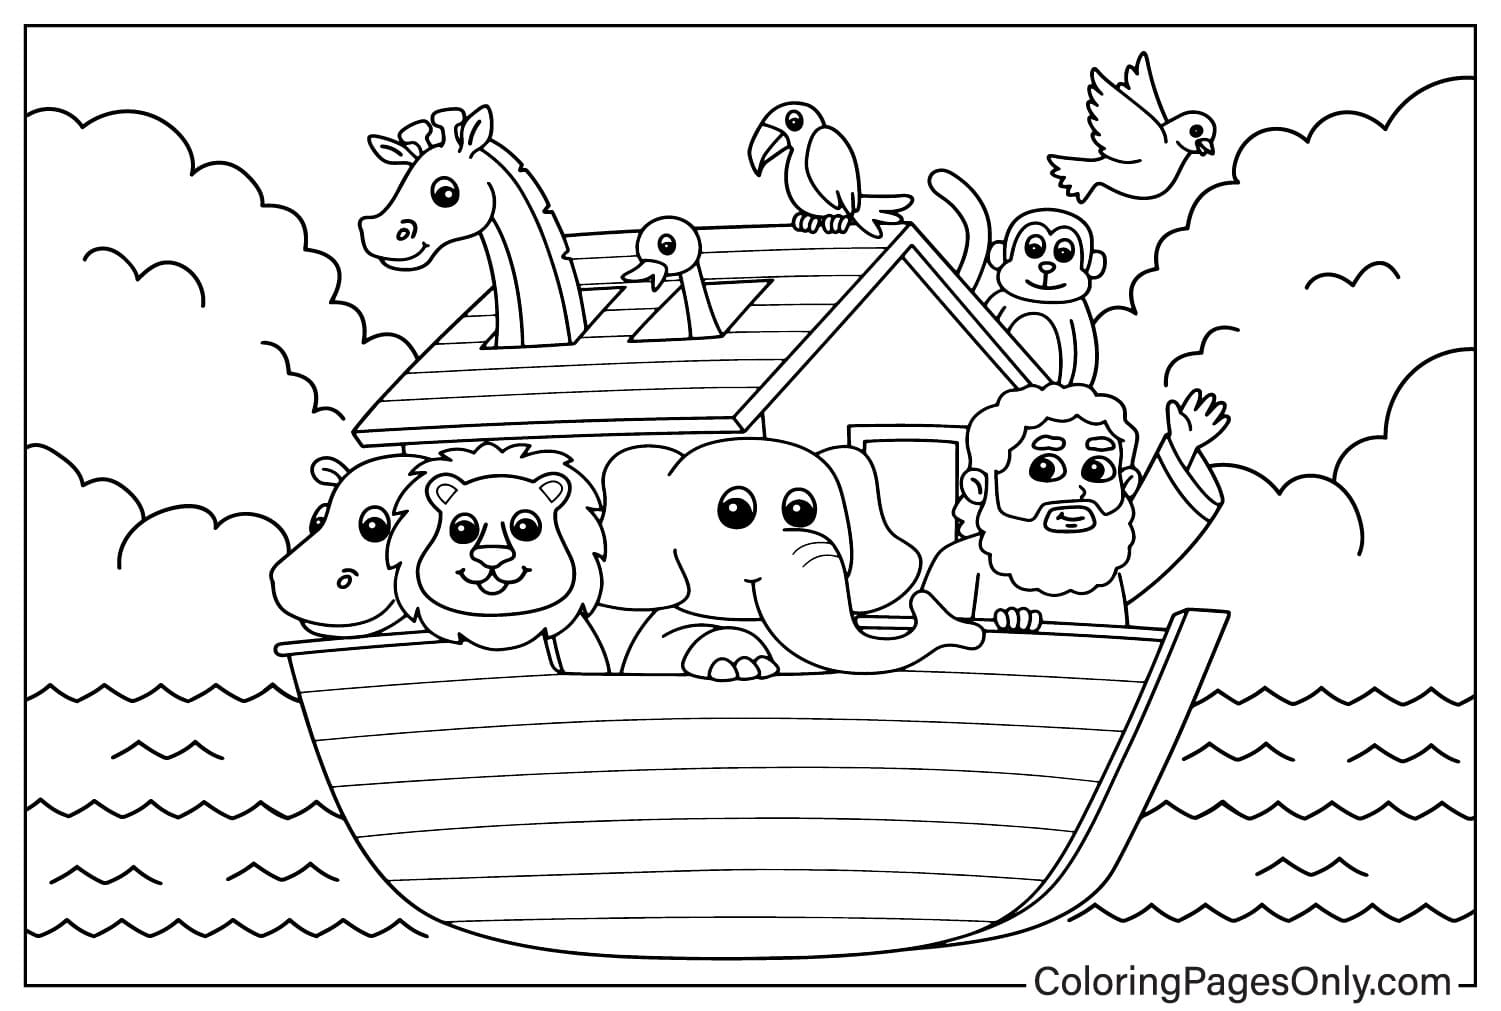 Noah’s Ark Coloring Sheet from Noah’s Ark